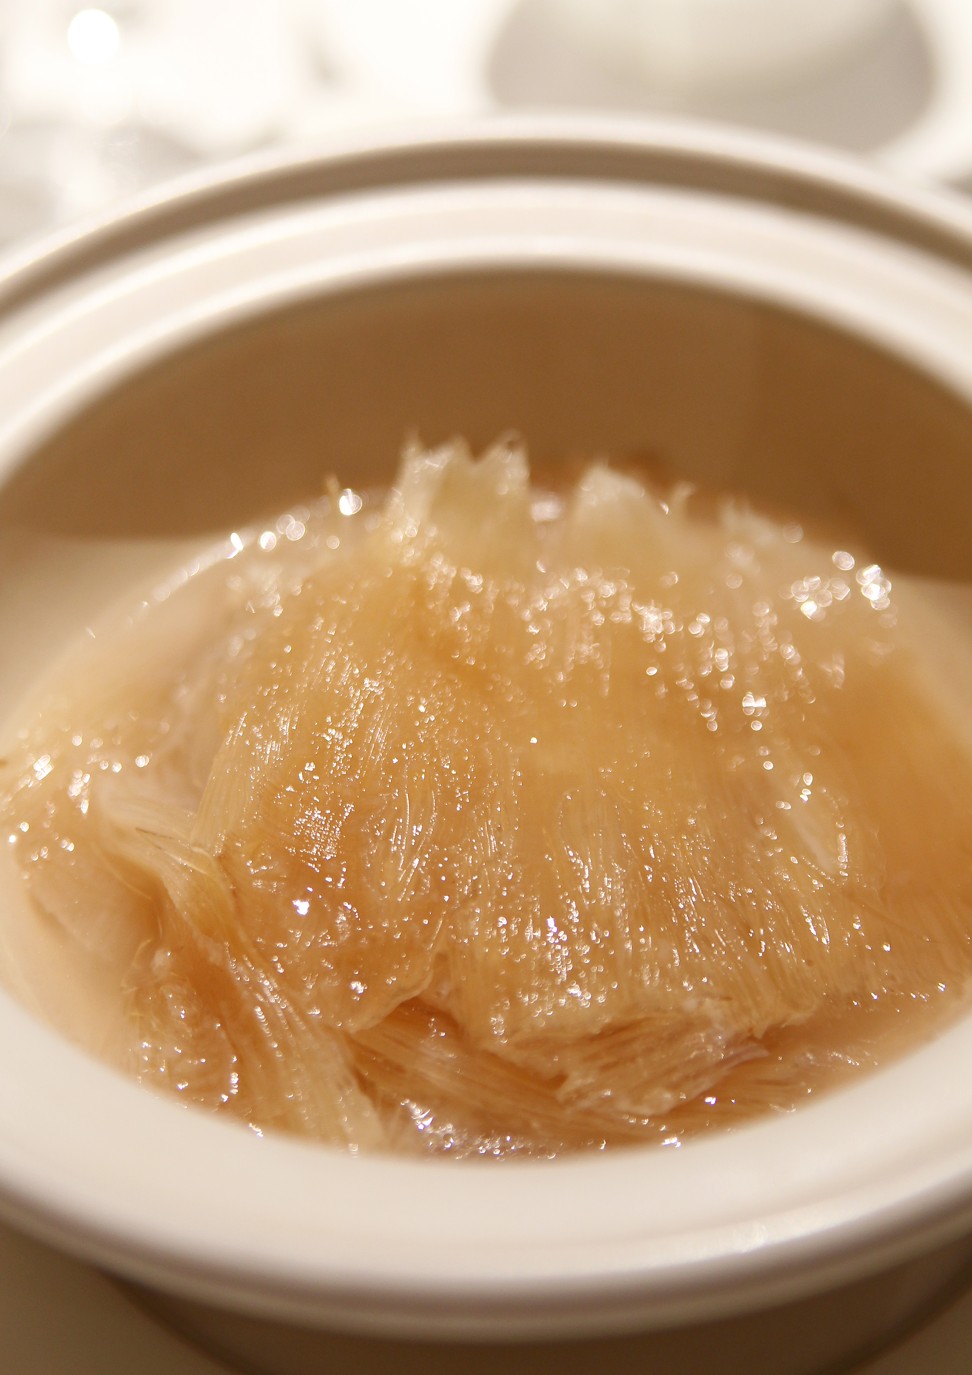 Shark’s fin soup is often served at banquets in Hong Kong and China. Photo: Oliver Tsang